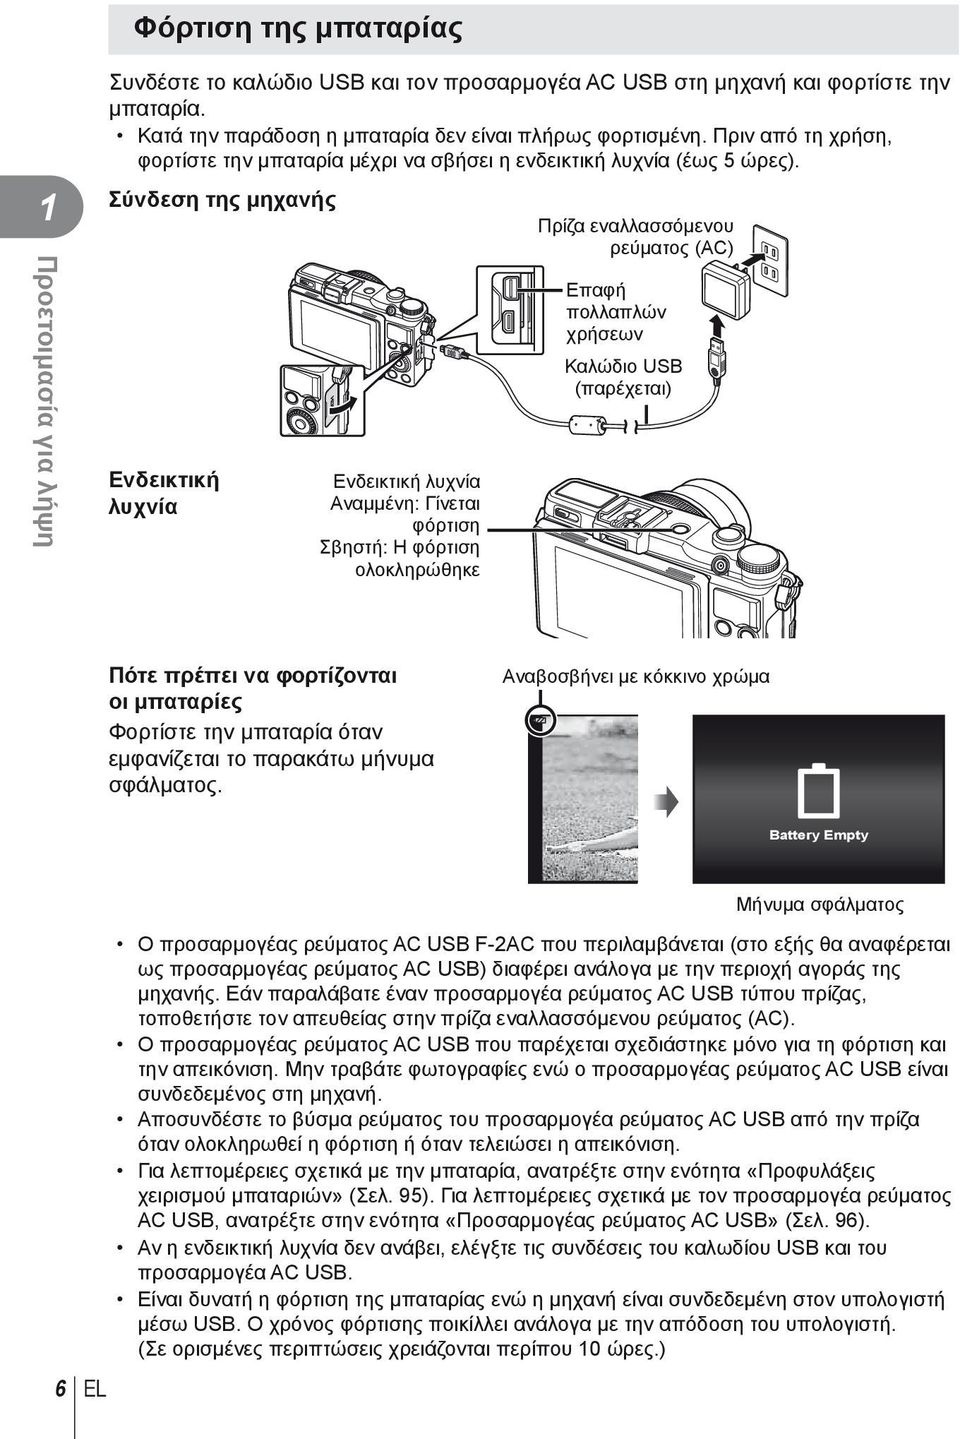 Σύνδεση της μηχανής Ενδεικτική λυχνία Ενδεικτική λυχνία Αναμμένη: Γίνεται φόρτιση Σβηστή: Η φόρτιση ολοκληρώθηκε Πρίζα εναλλασσόμενου ρεύματος (AC) Επαφή πολλαπλών χρήσεων Καλώδιο USB (παρέχεται)